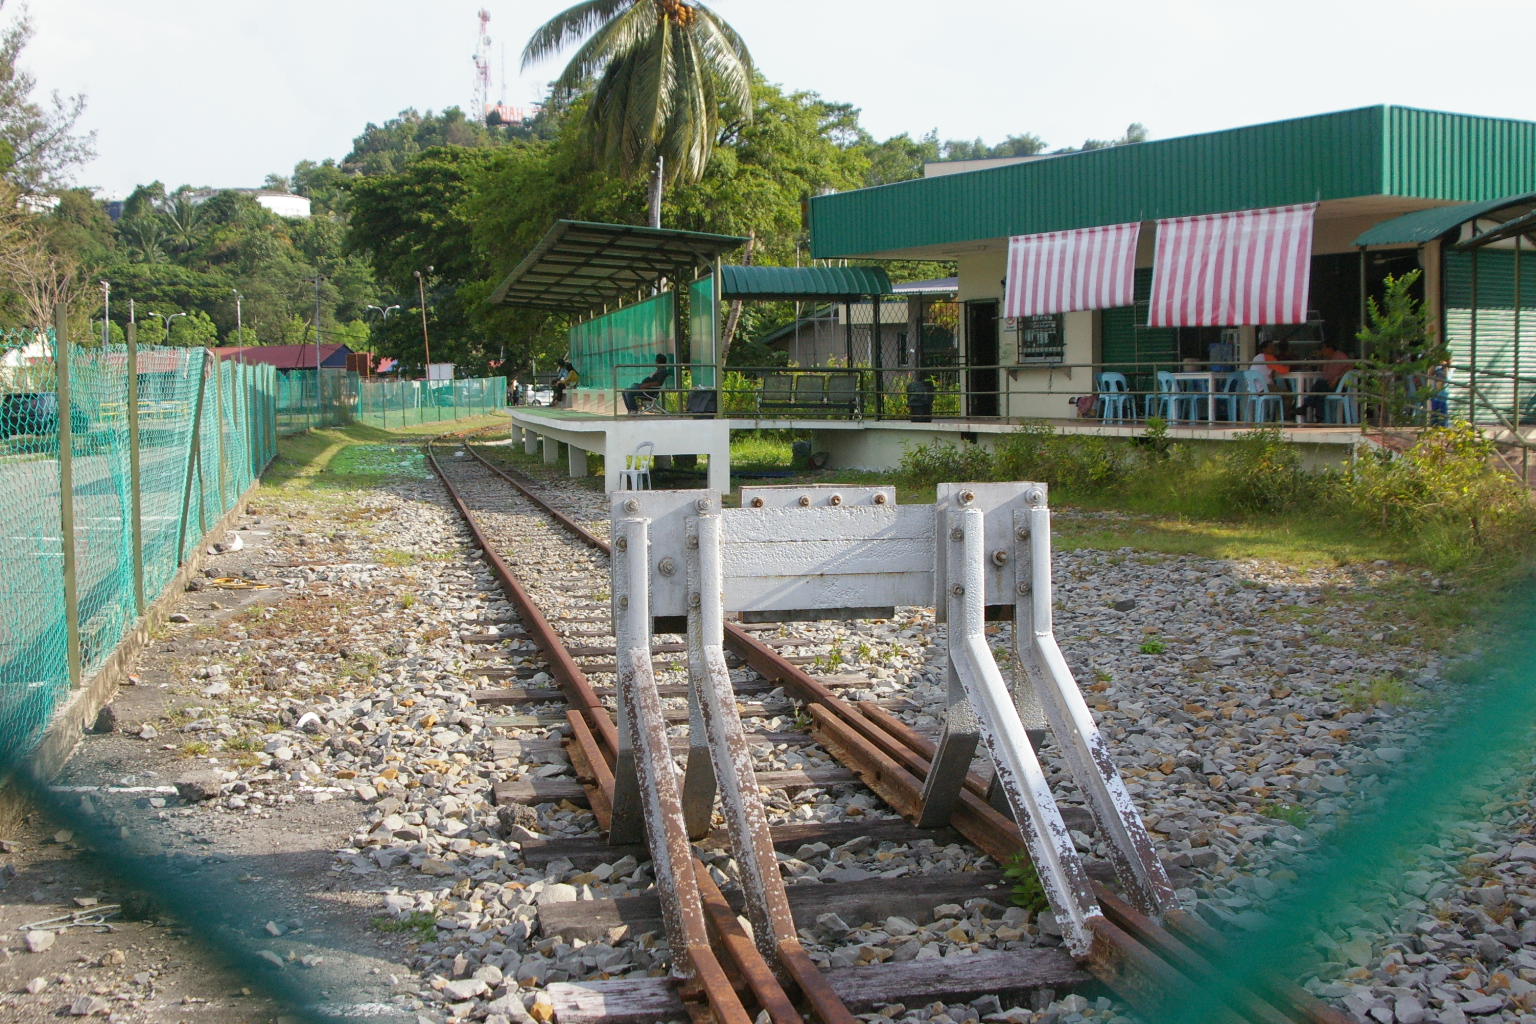 Sembulan station in Kota Kinabalu, Malaysia April 30,2014